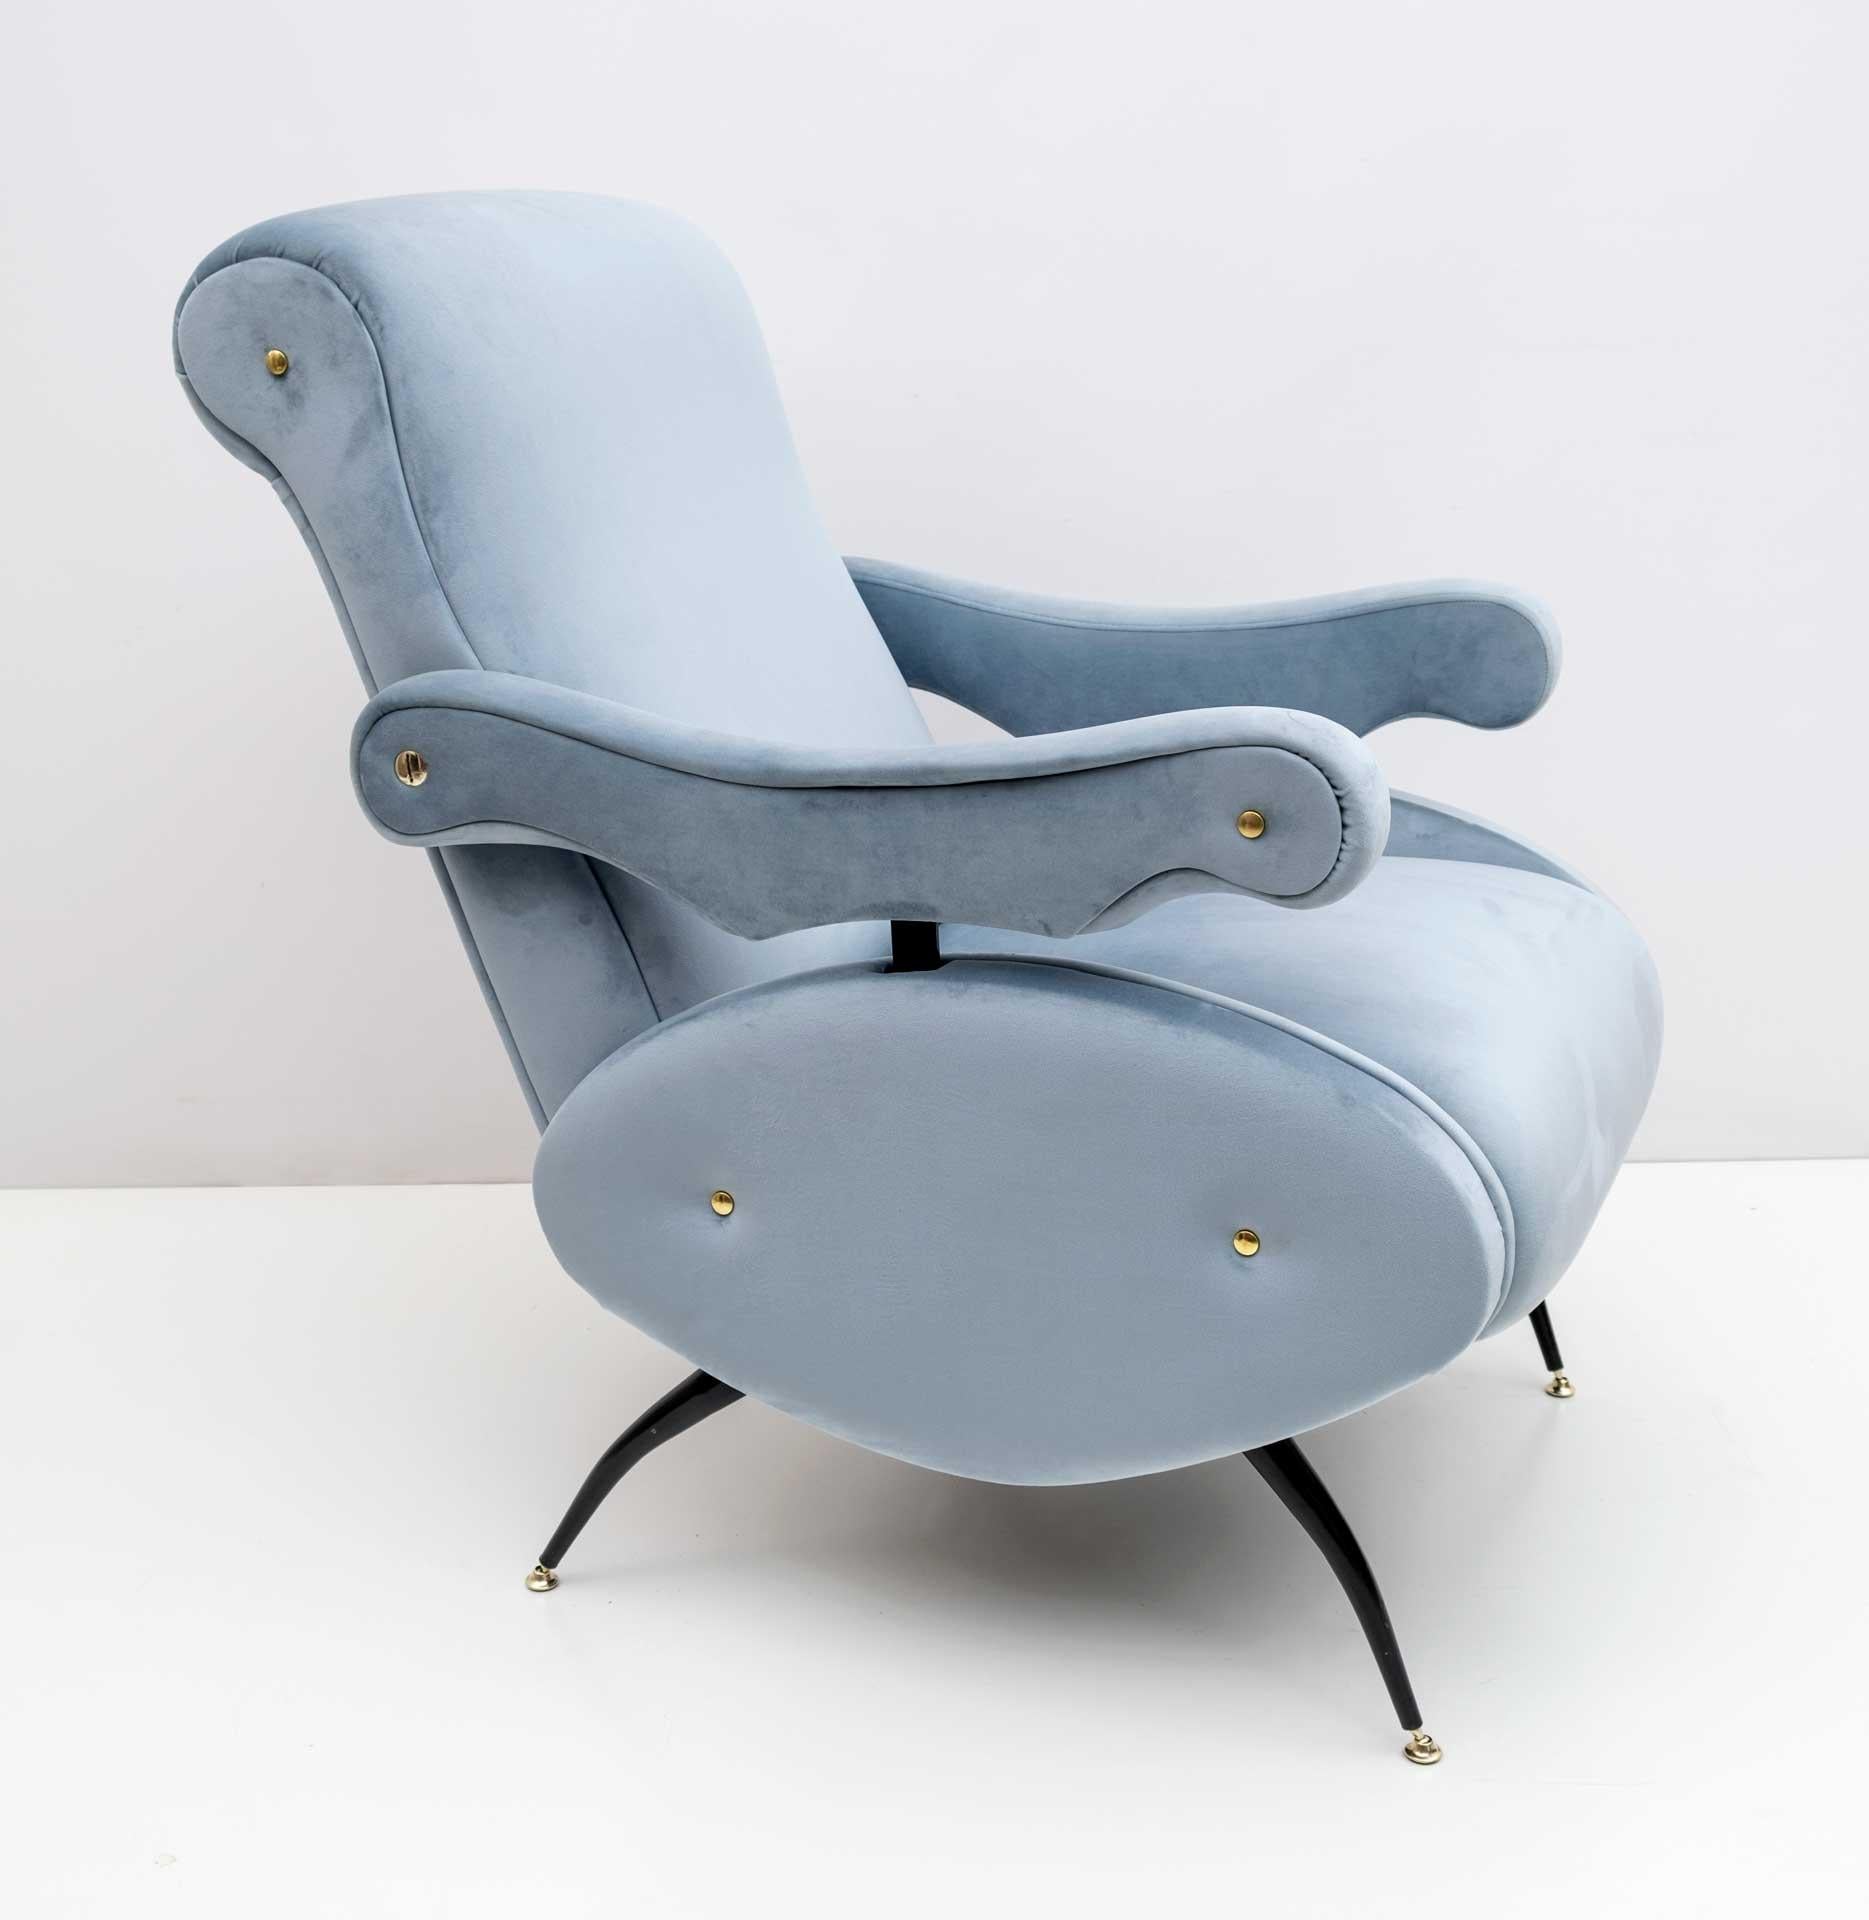 Liegesessel, entworfen von Nello Pini für Novarredo in den 1950er Jahren. Der Sessel wurde restauriert und mit hellblauem Samt gepolstert.